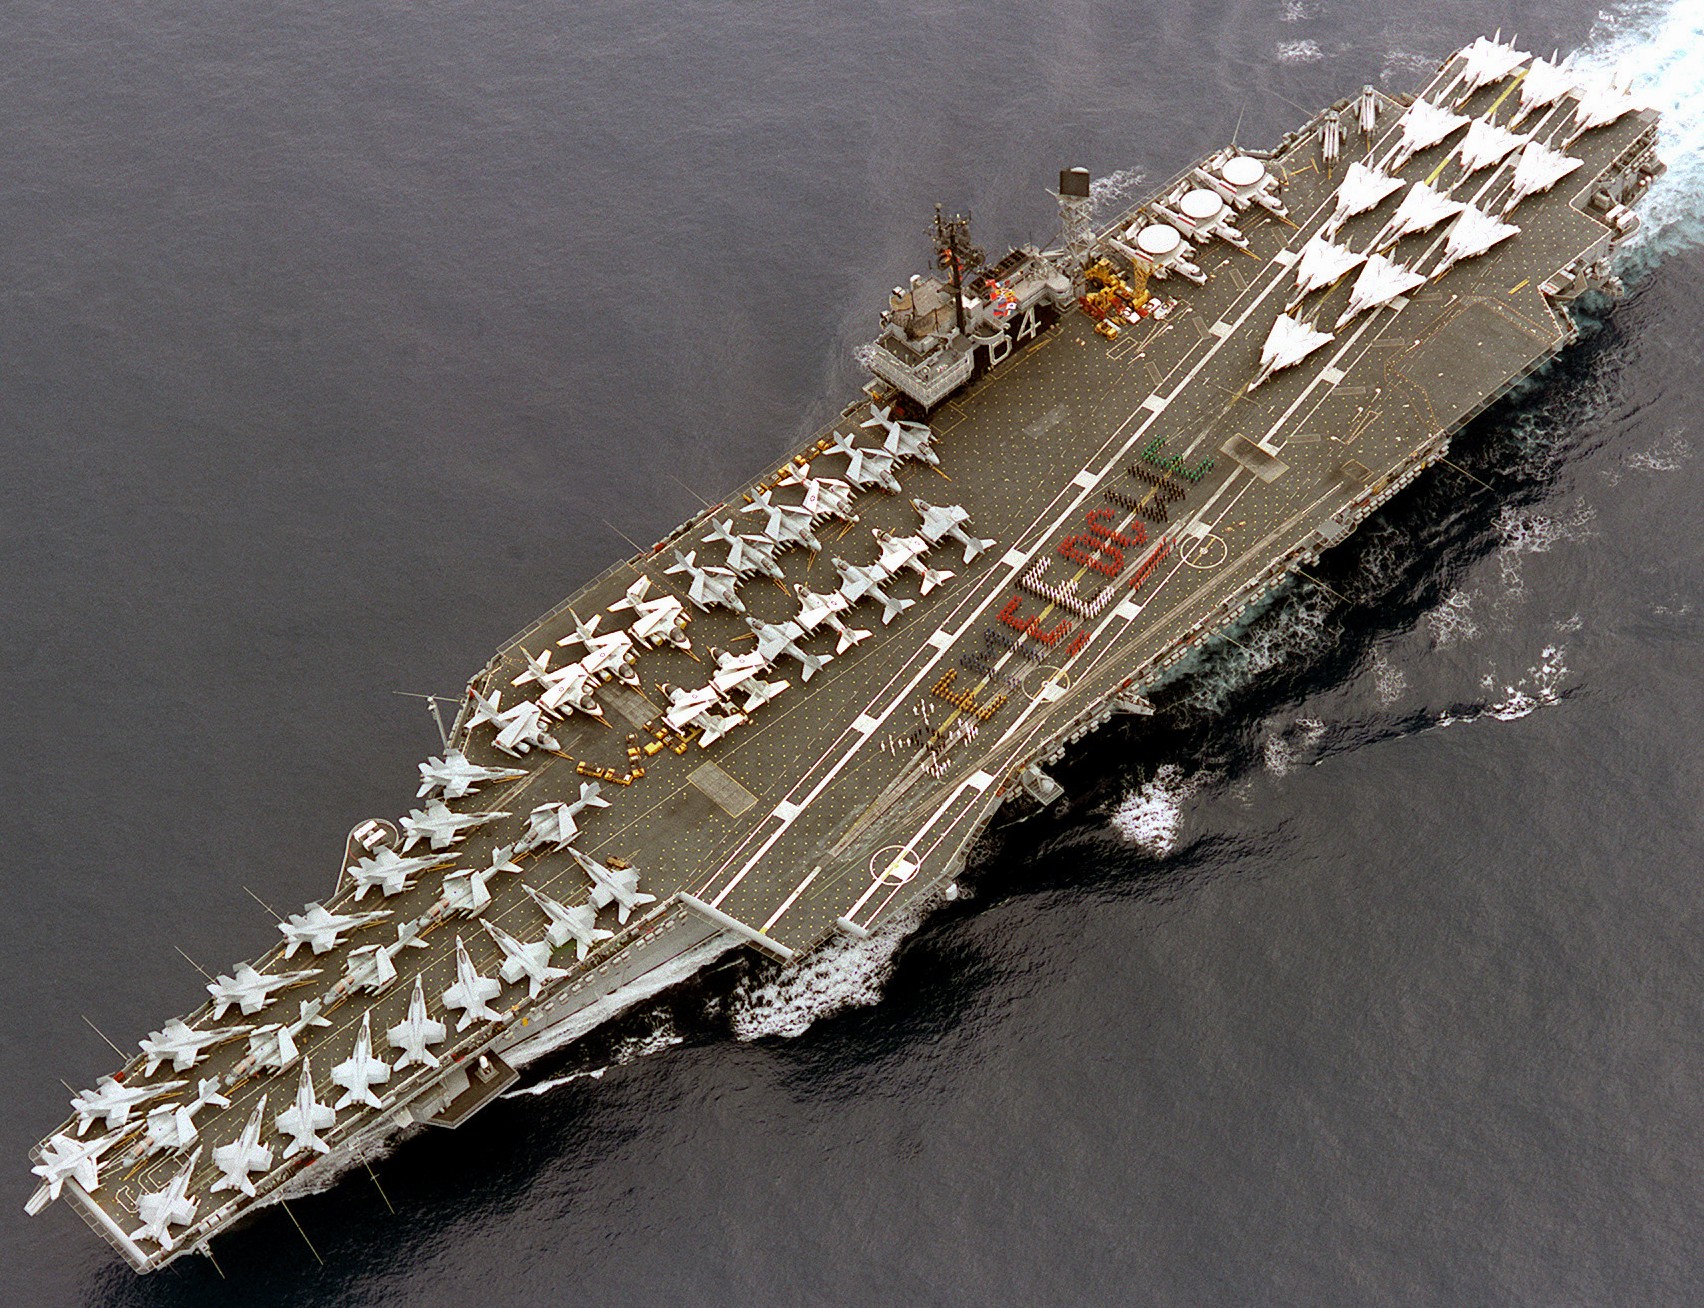 cv-64 uss constellation kitty hawk class aircraft carrier air wing cvw-14 us navy 1986 82